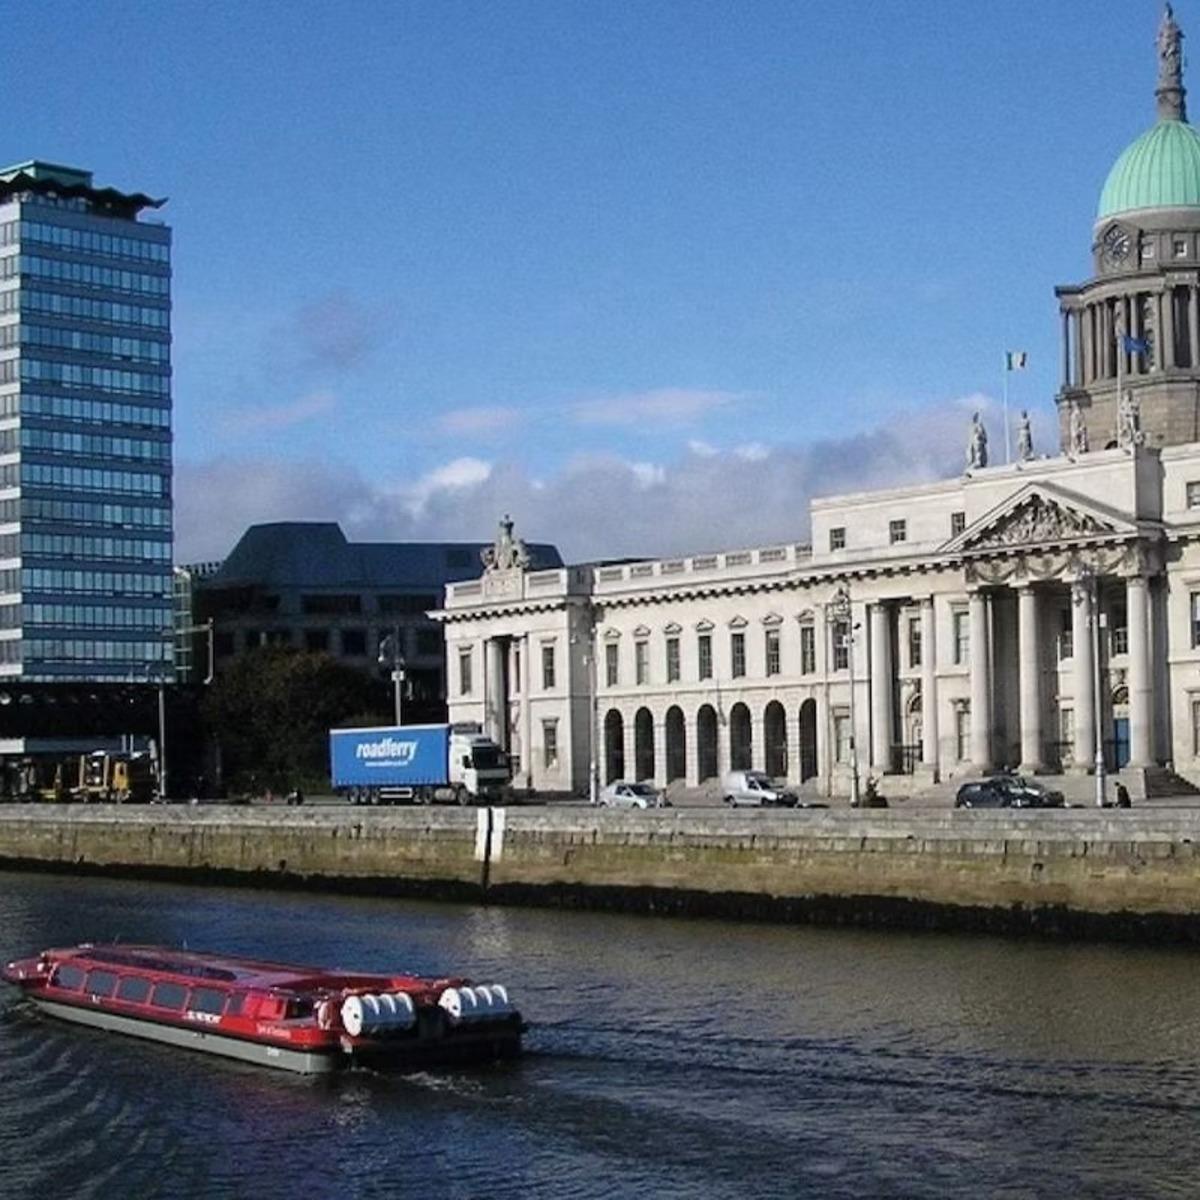 Dublin Liffley River Cruise